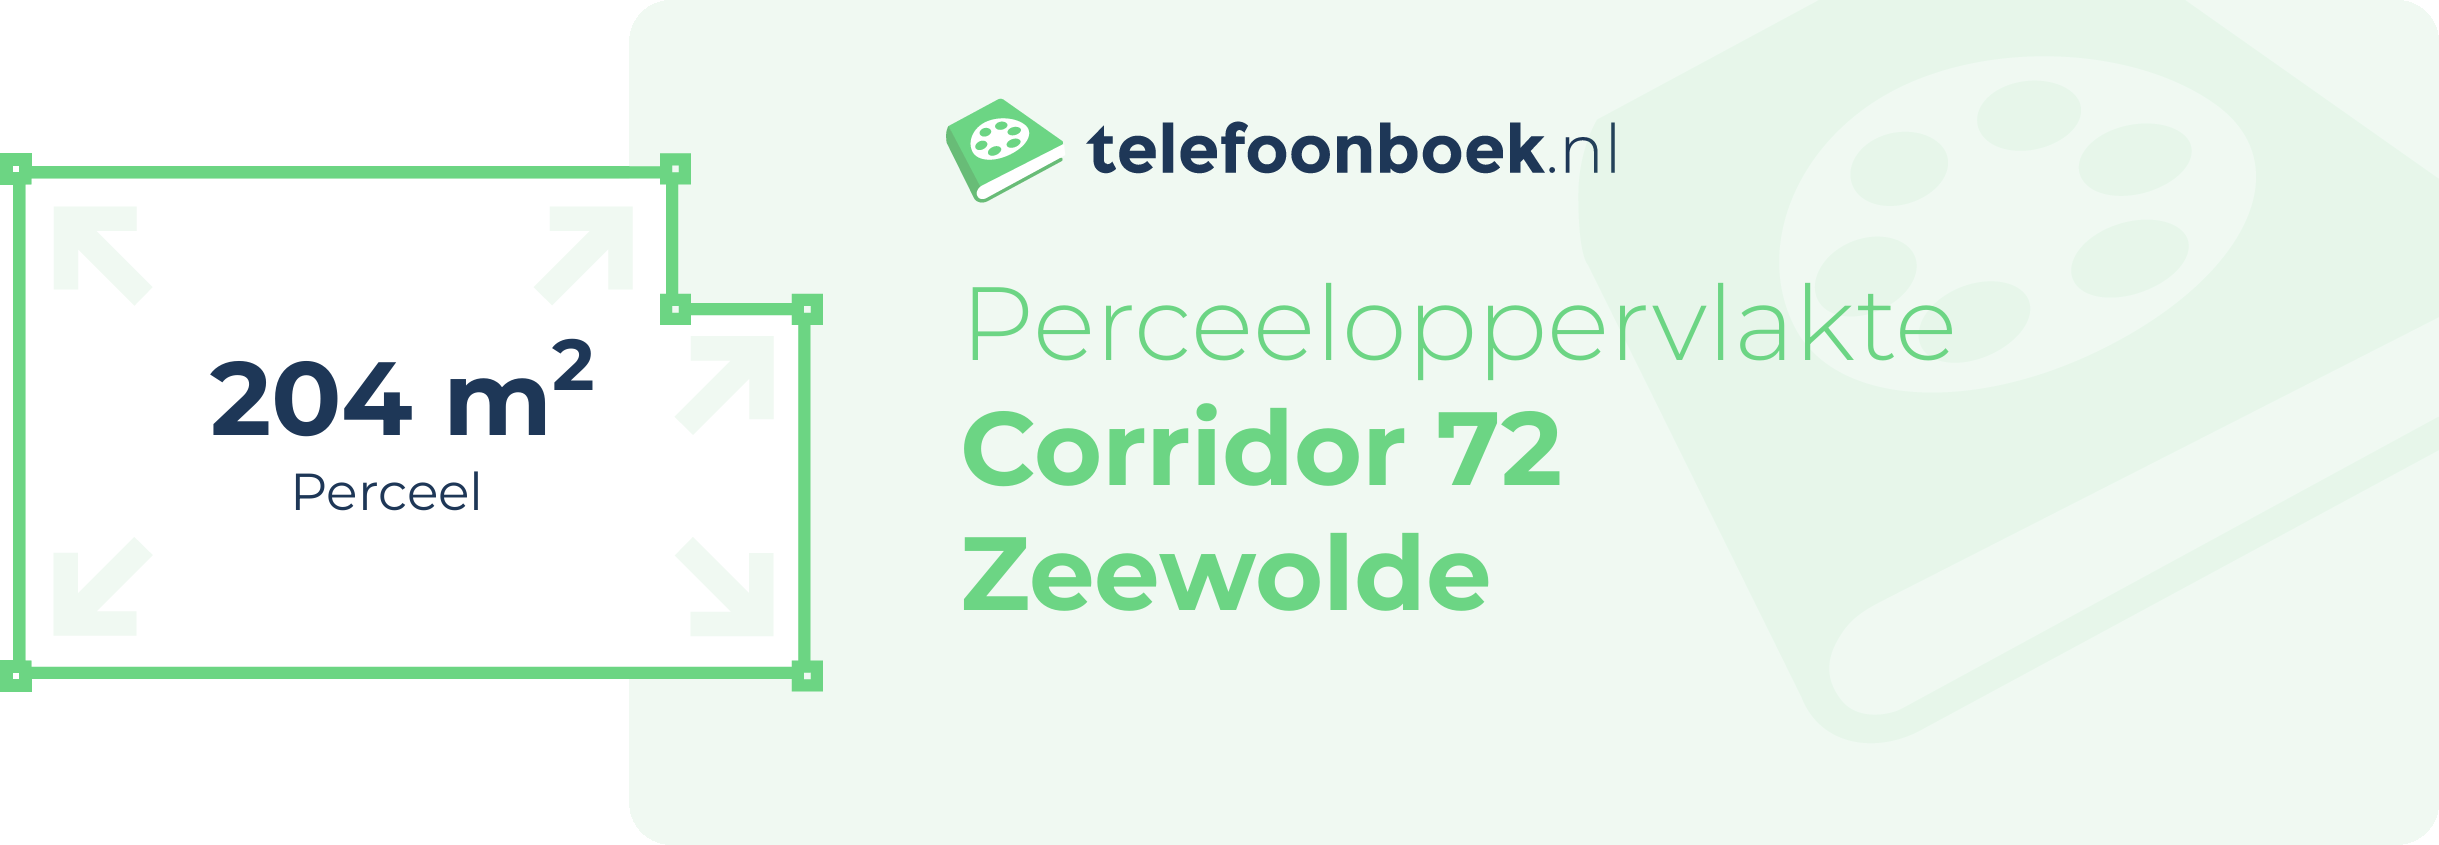 Perceeloppervlakte Corridor 72 Zeewolde